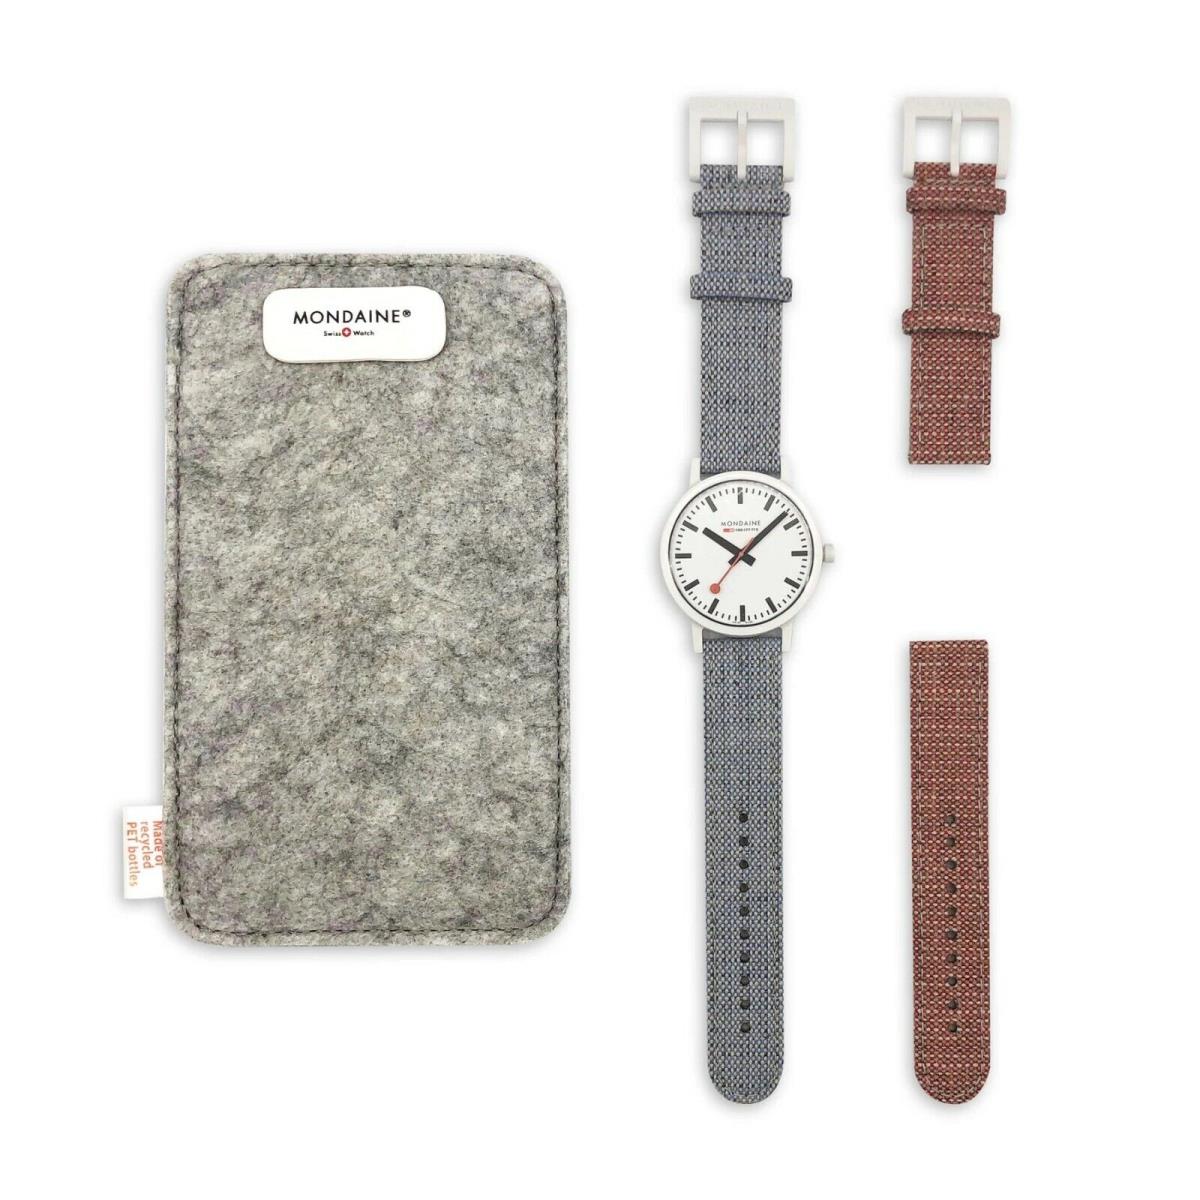 Mondaine MS1.41110.LD.SET1 Unisex Large White Case Watch with 2 Textile Straps